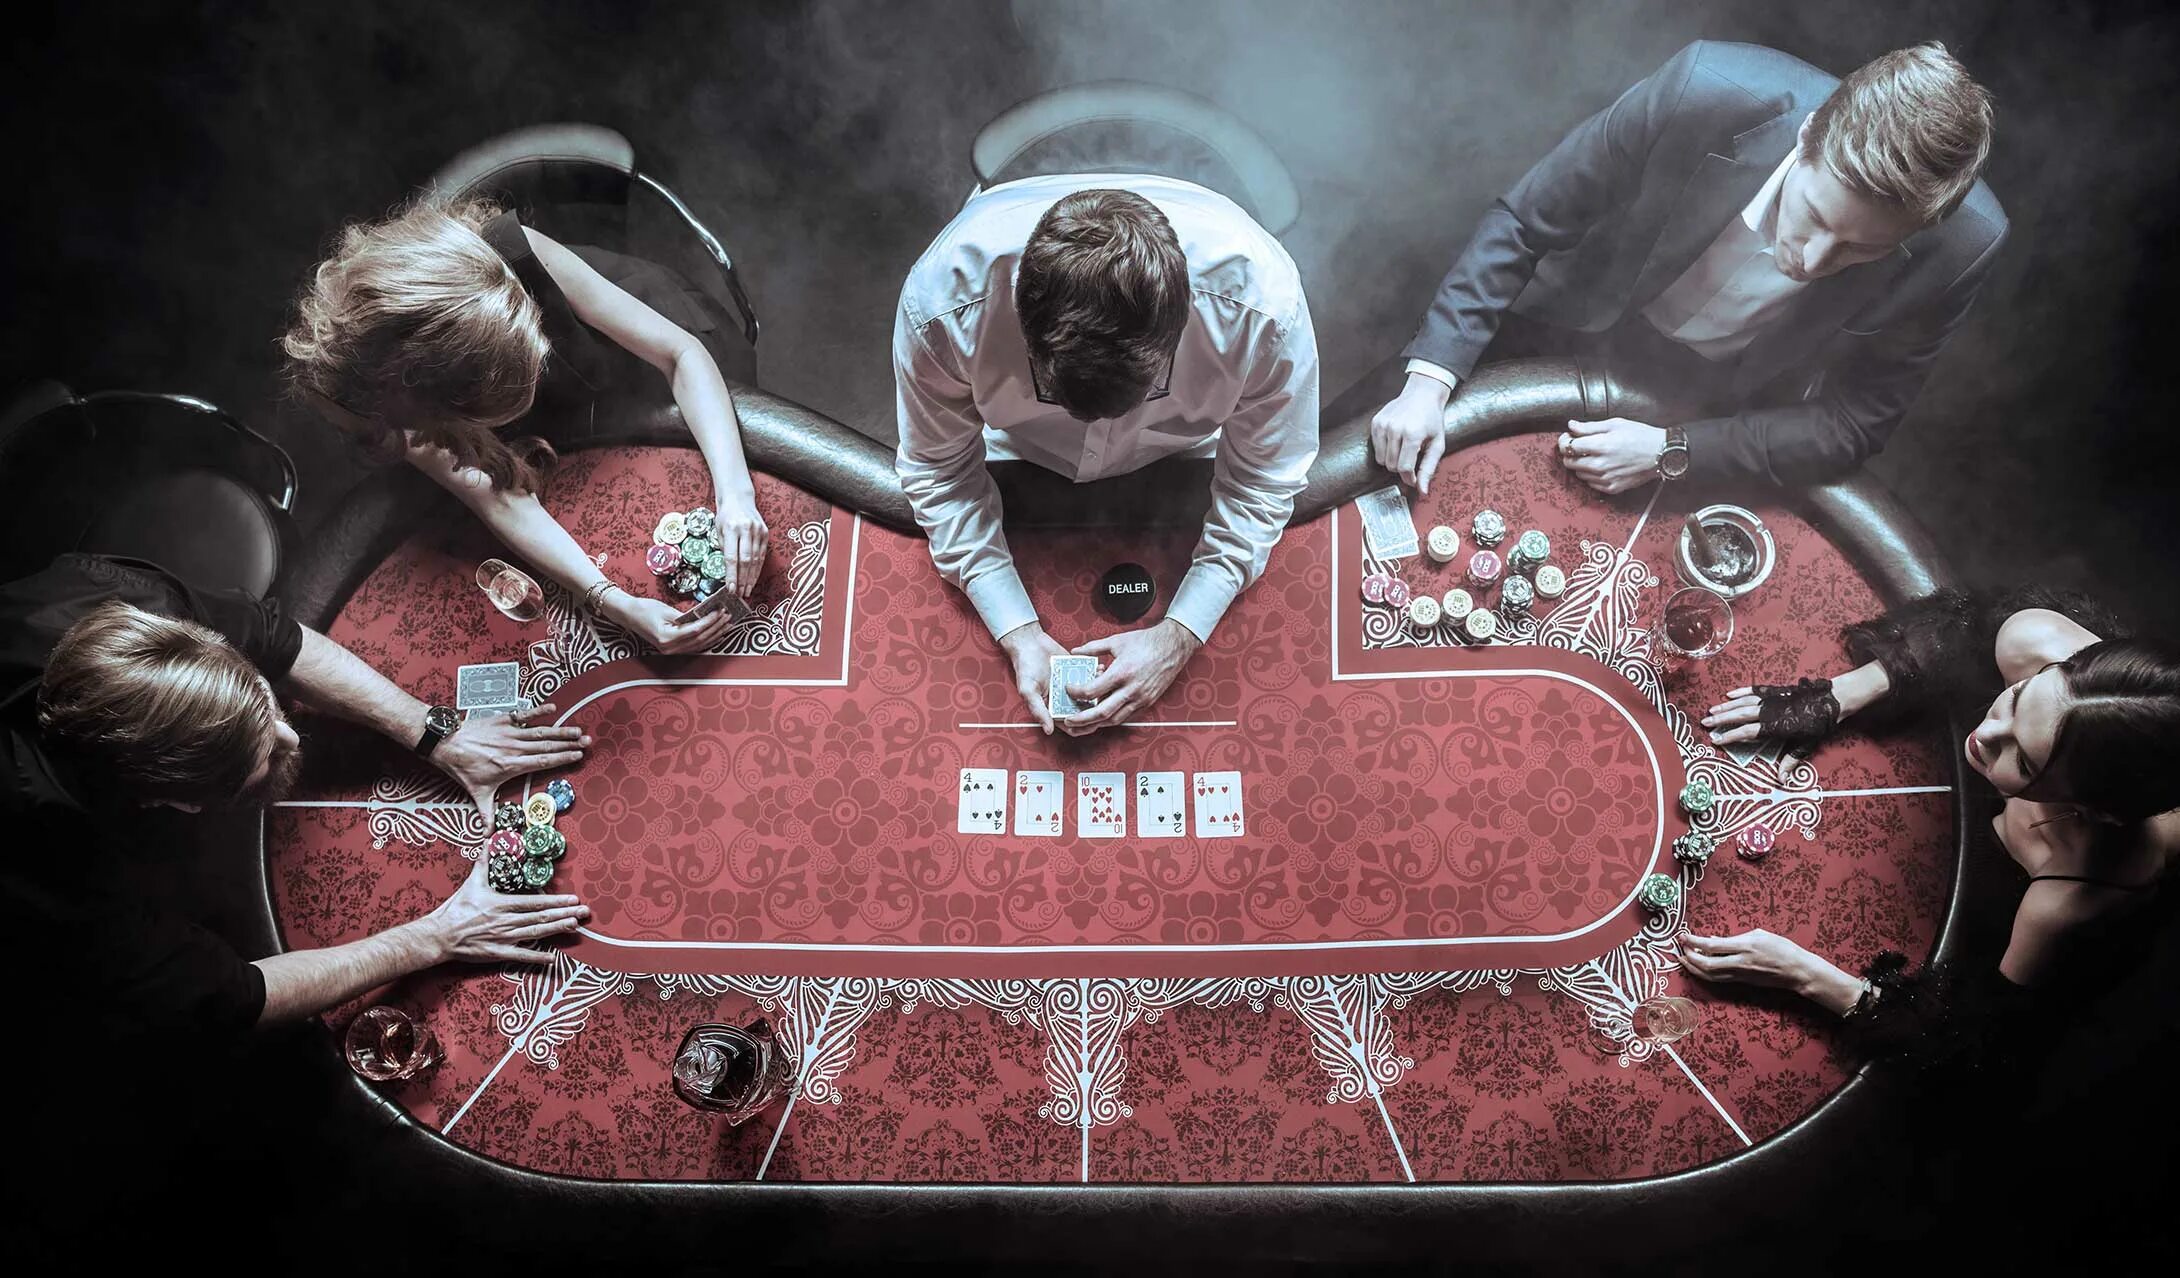 Азартные игры виды. Покерный стол в казино. Покерный стол с людьми. Стол для покера вид сверху. Покерный стол с игроками.